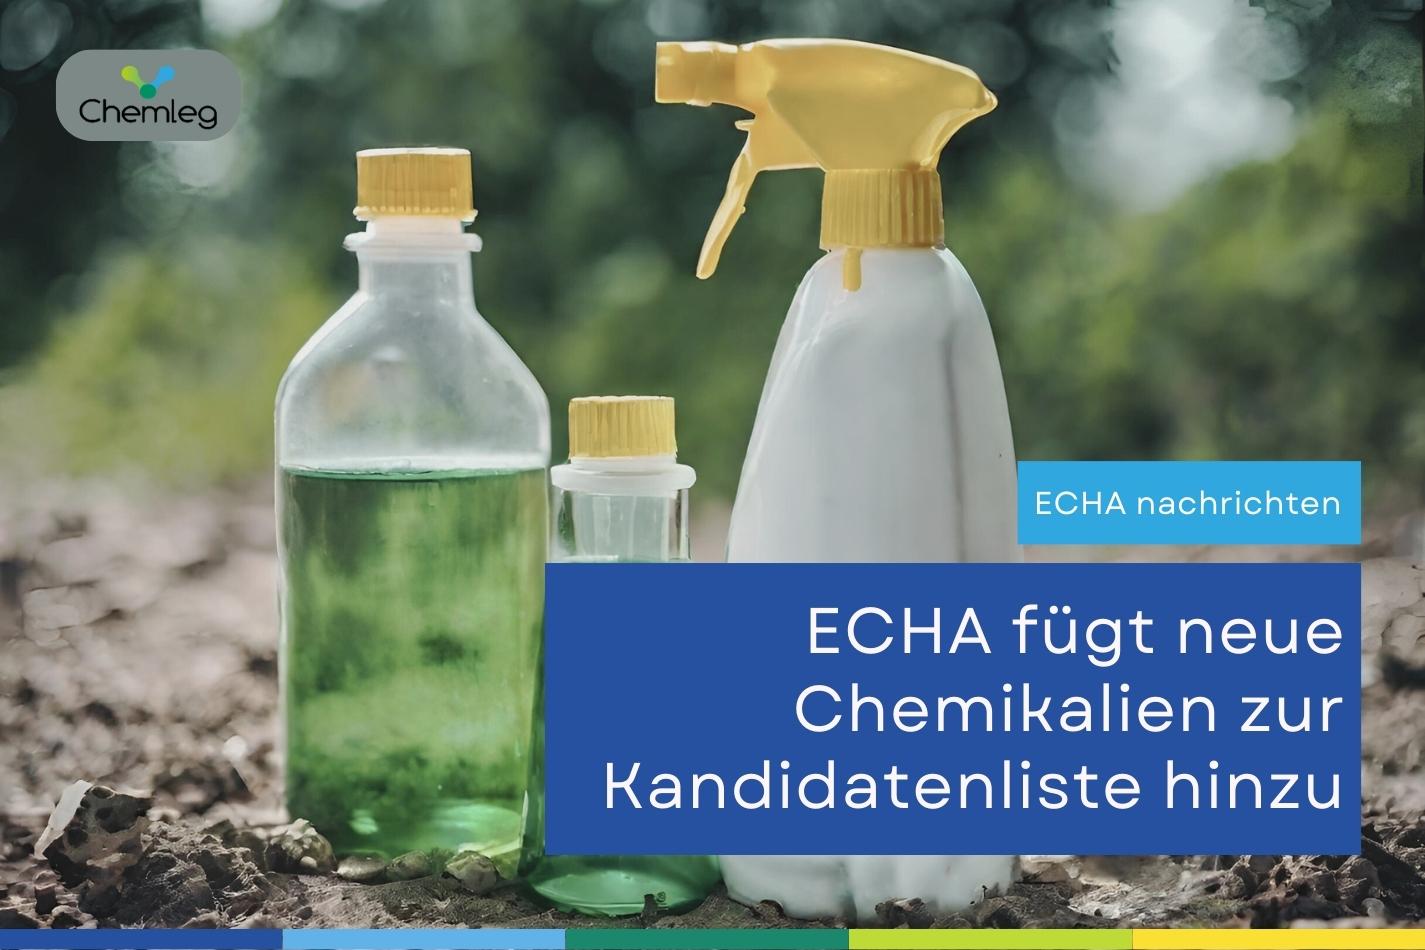 Fünf gefährliche Chemikalien zur ECHA-Kandidatenliste hinzugefügt